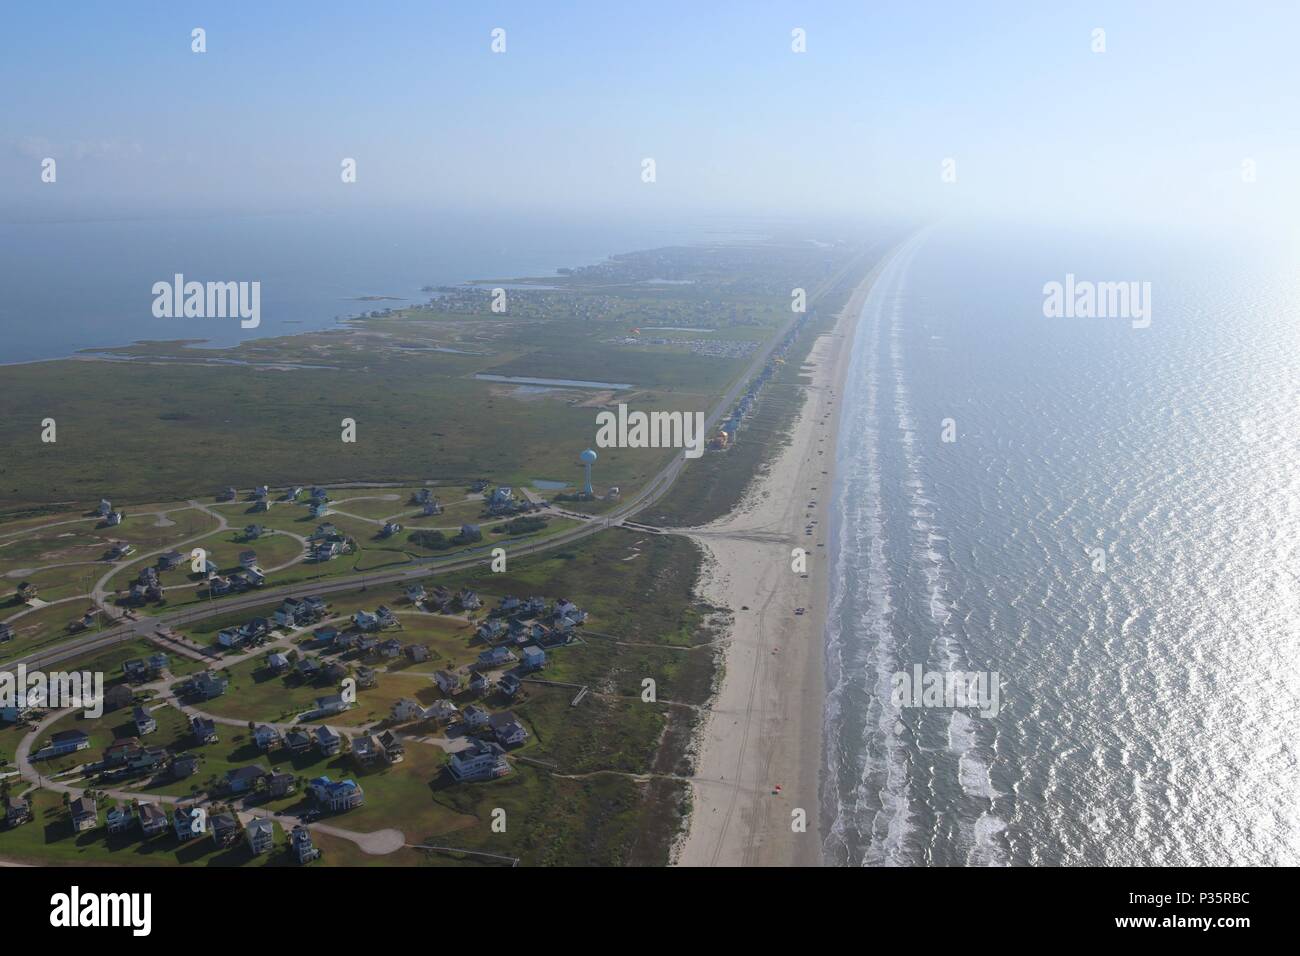 Luftbild des Texas Gulf Coast, Galveston Island, USA. Haze aufgrund der warmen Witterung. Ozean, Golf von Mexiko, Strand, Immobilien und Reisen Stockfoto